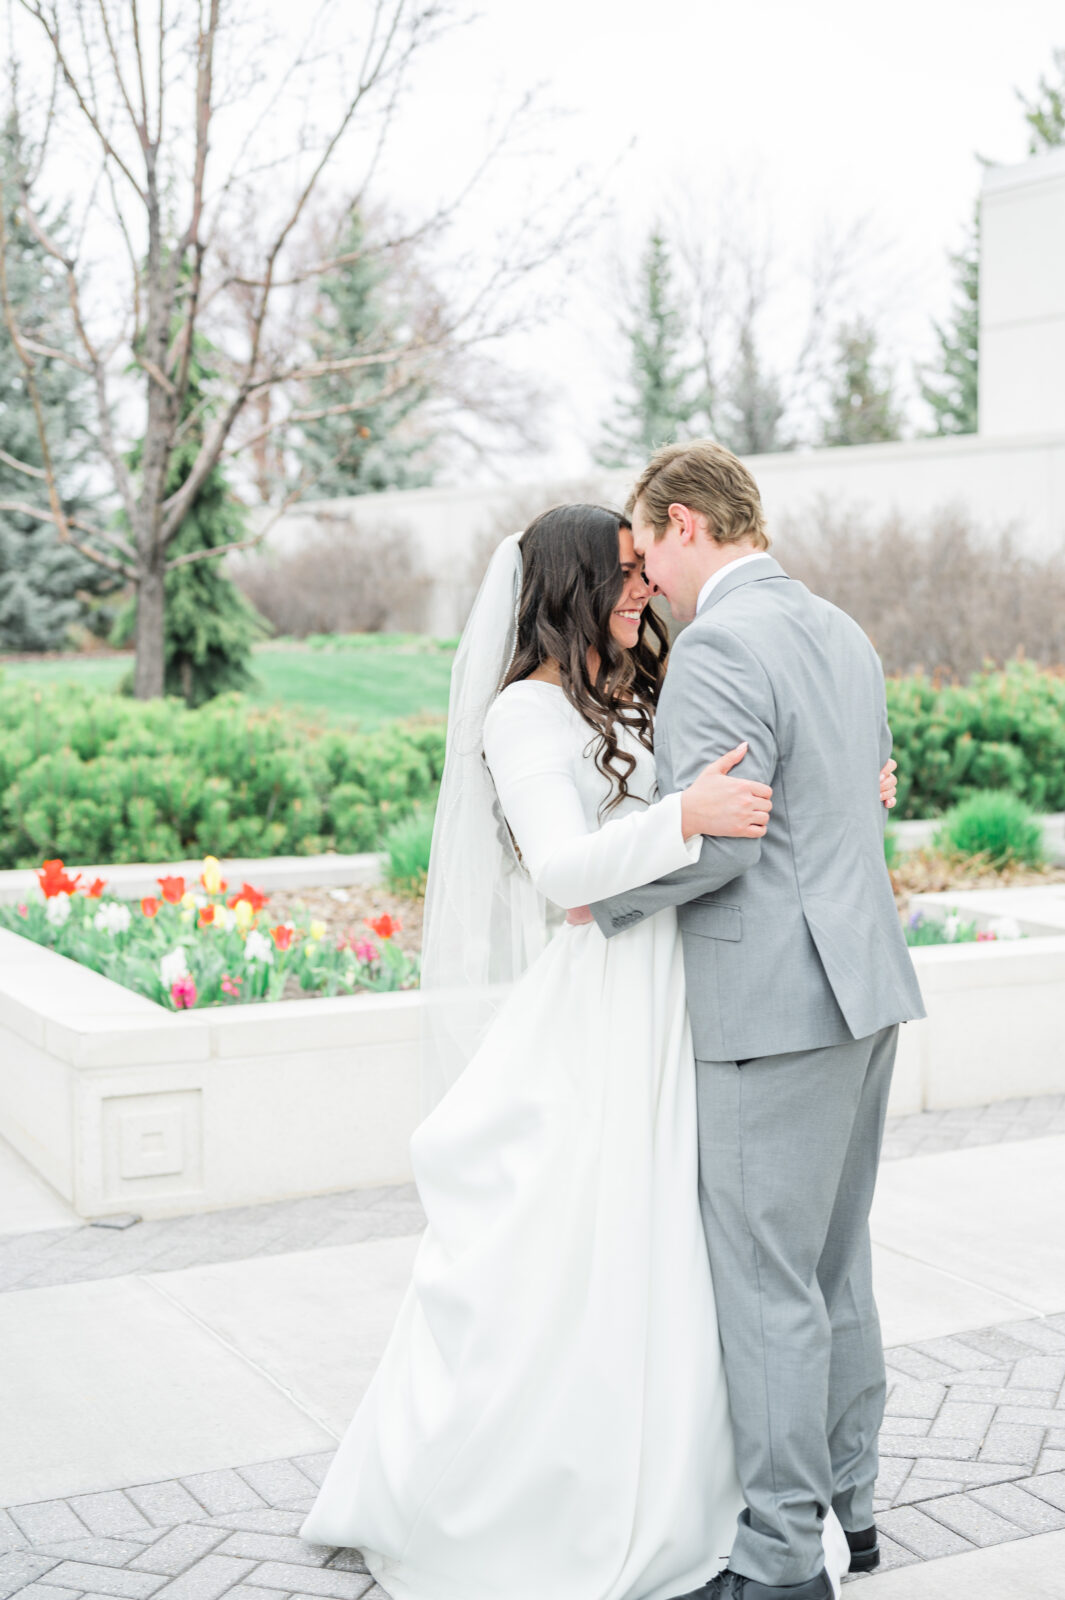 Wedding at the Idaho Falls temple